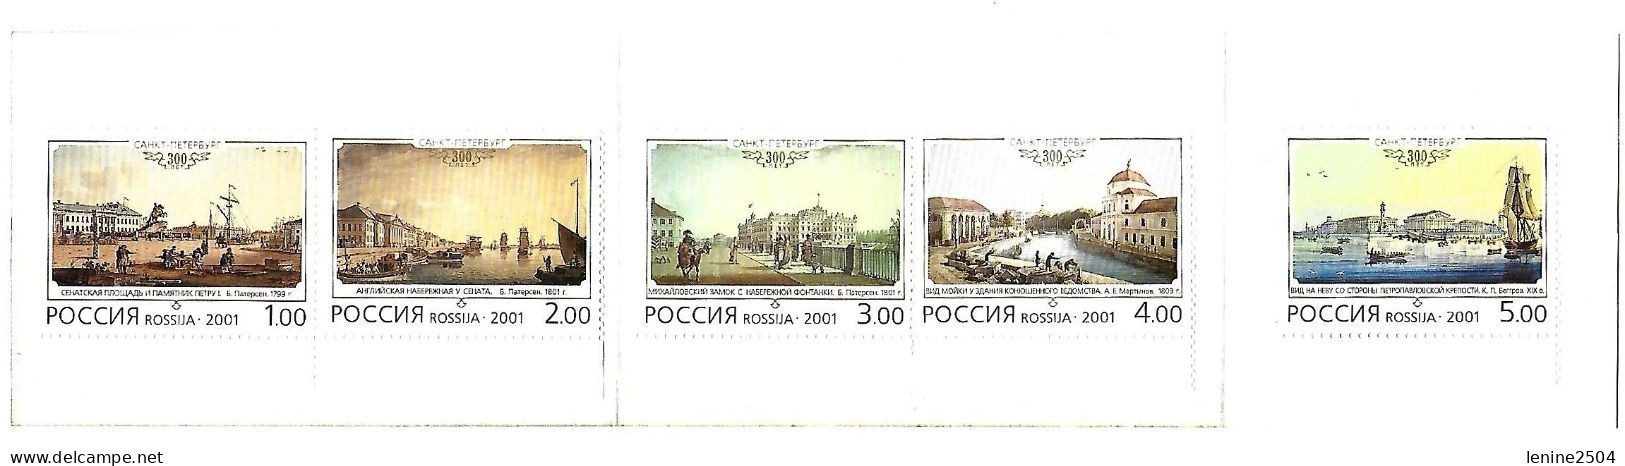 Russie 2001 N° 6555-6559 ** St Petersbourg Emission 1er Jour Carnet Prestige Folder Booklet. - Unused Stamps